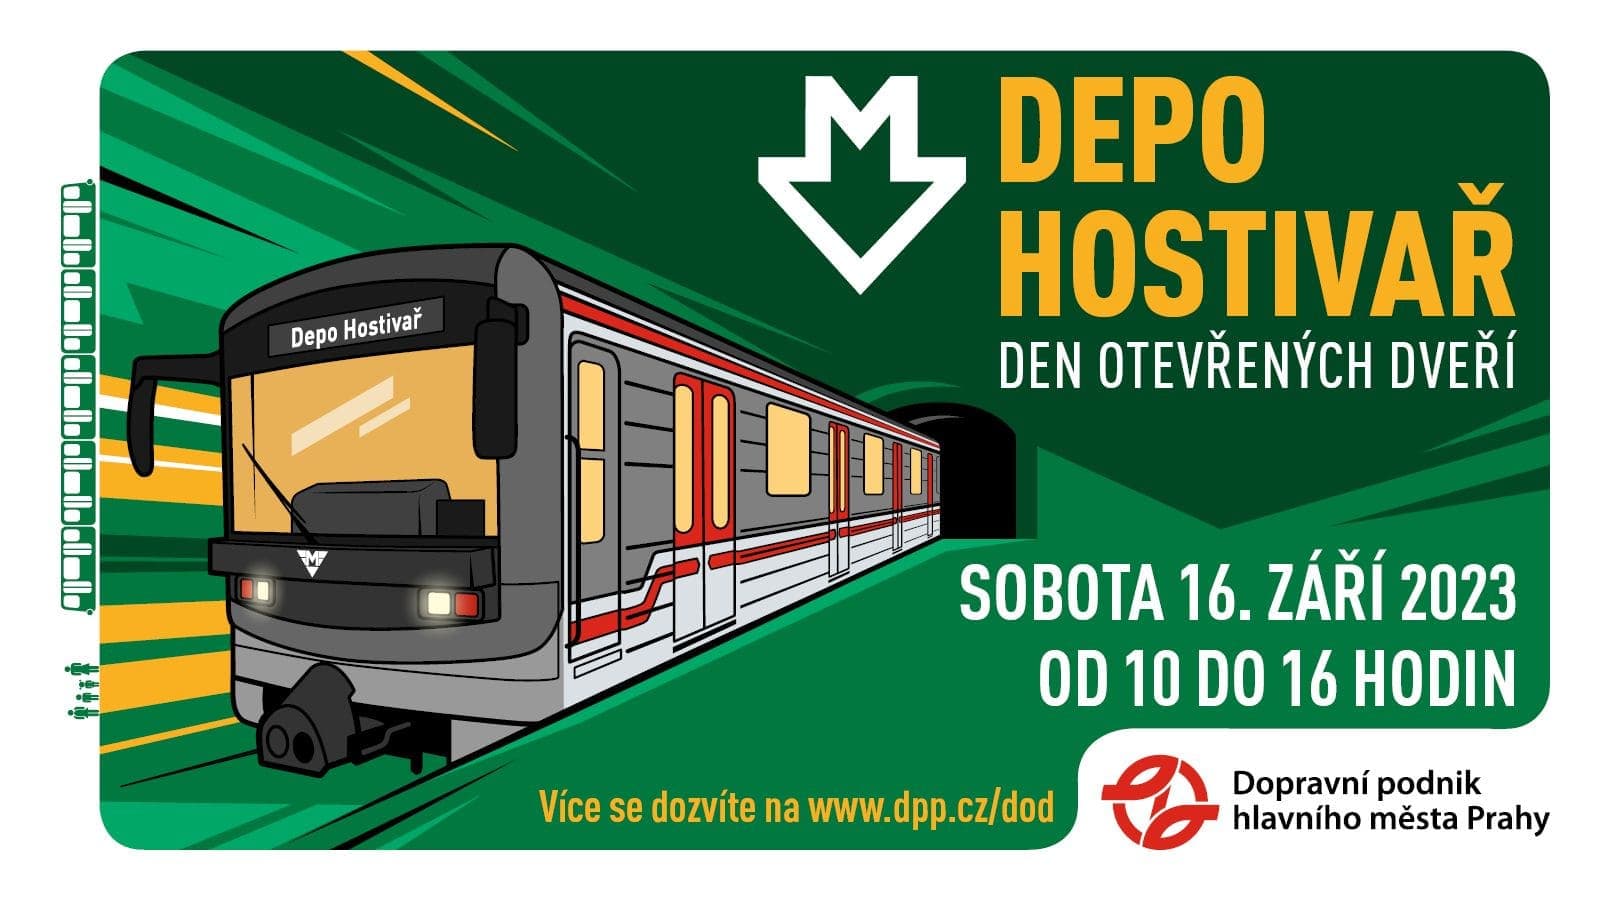 16 сентября в депо Hostivař пройдет день открытых дверей